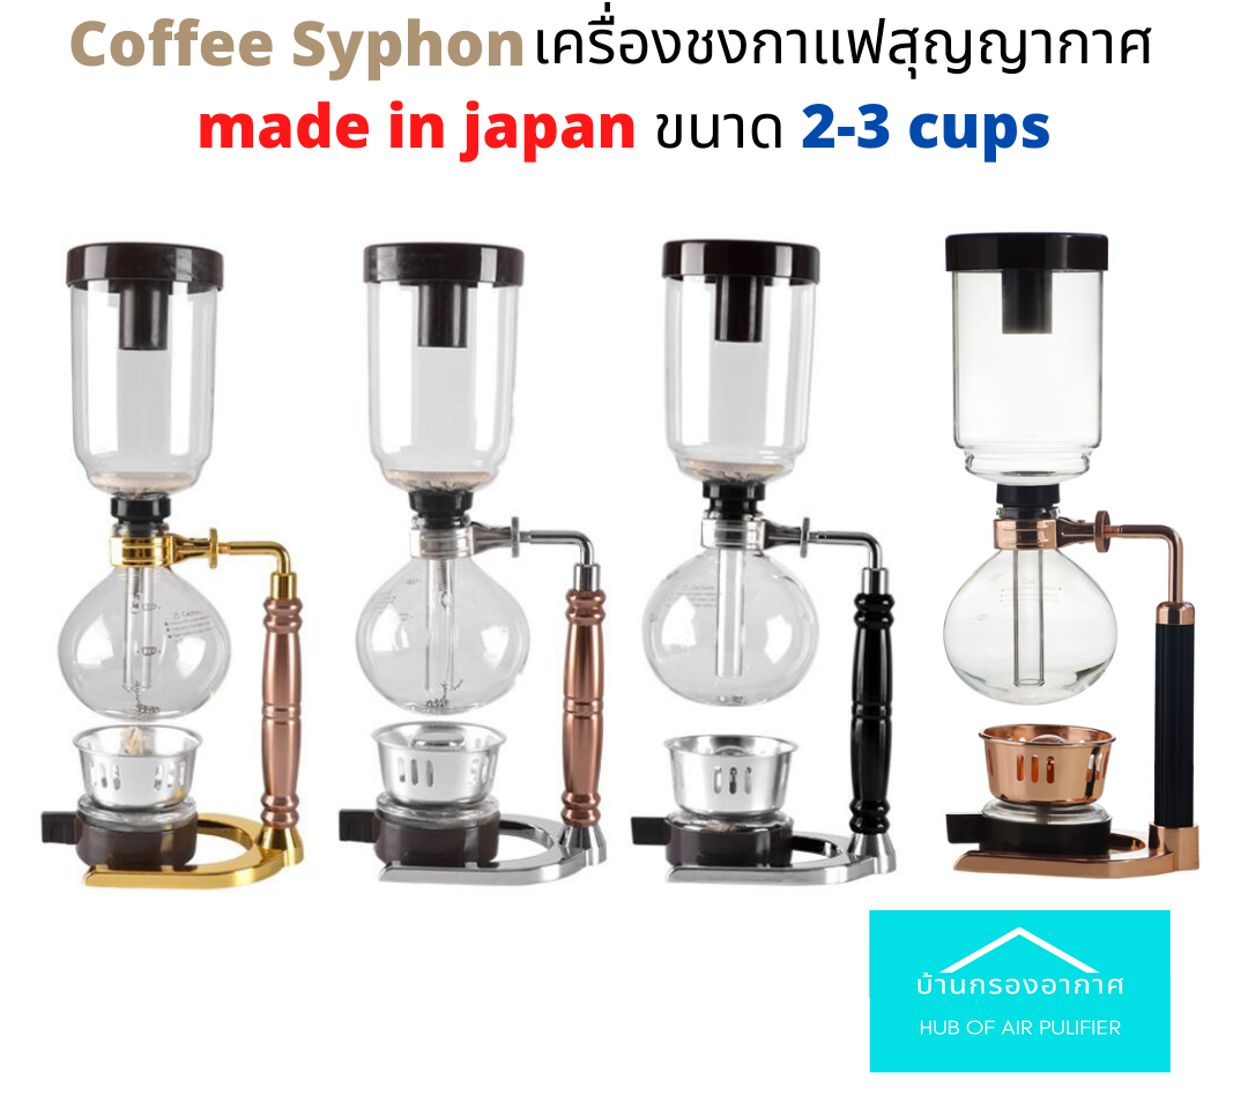 พร้อมส่งจากร้านไทย!! syphon coffee ไซฟอน เครื่องชง กาแฟ สุญญากาศ made in japan ขนาด 2-3 cups ตะเกียง เอทิลแอลกอฮอร์☕☕☕